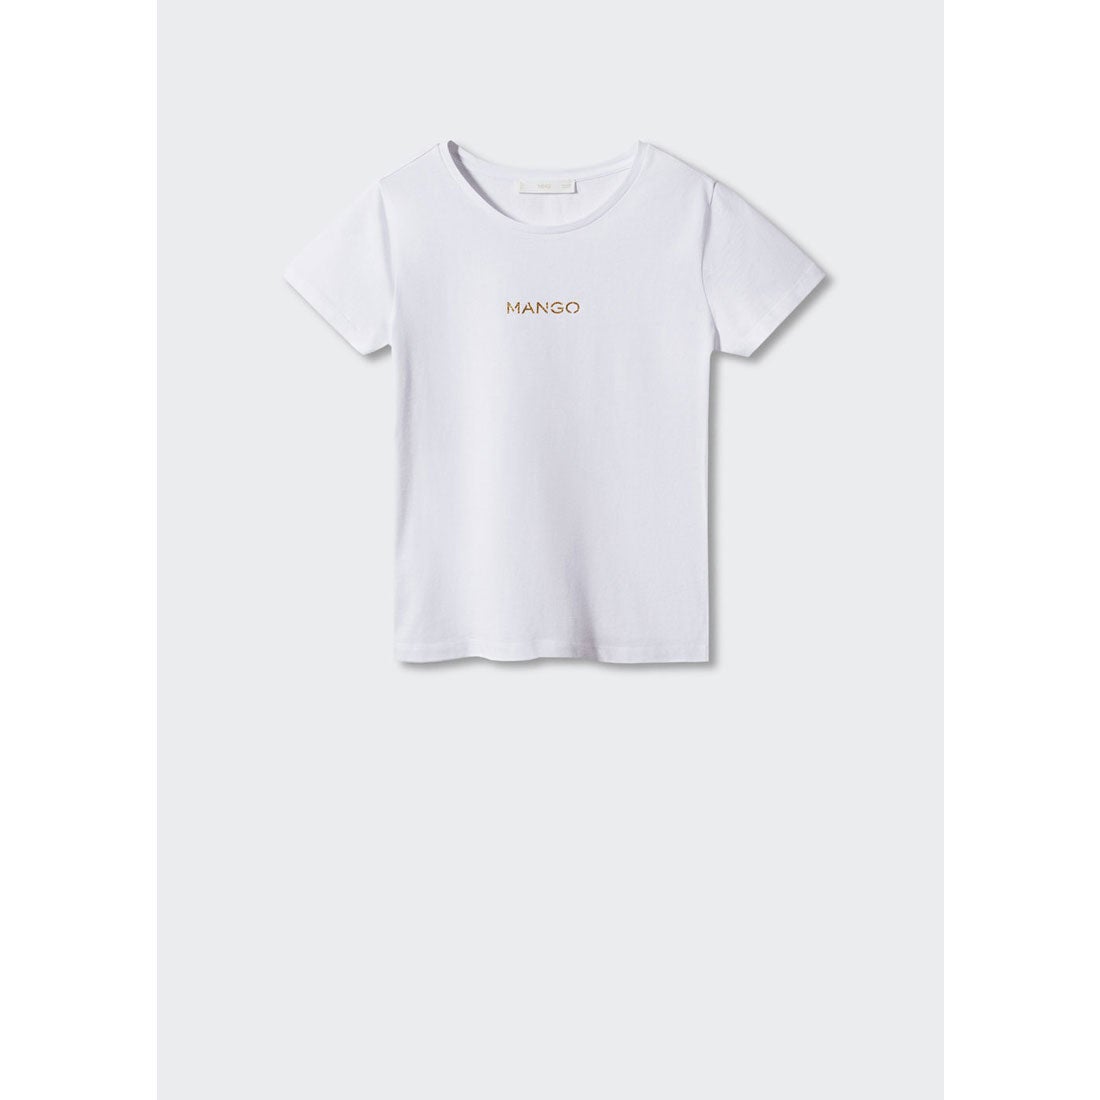 Tシャツ .-- MANGOLOG-H （ホワイト） -MANGO - マンゴ公式オンライン